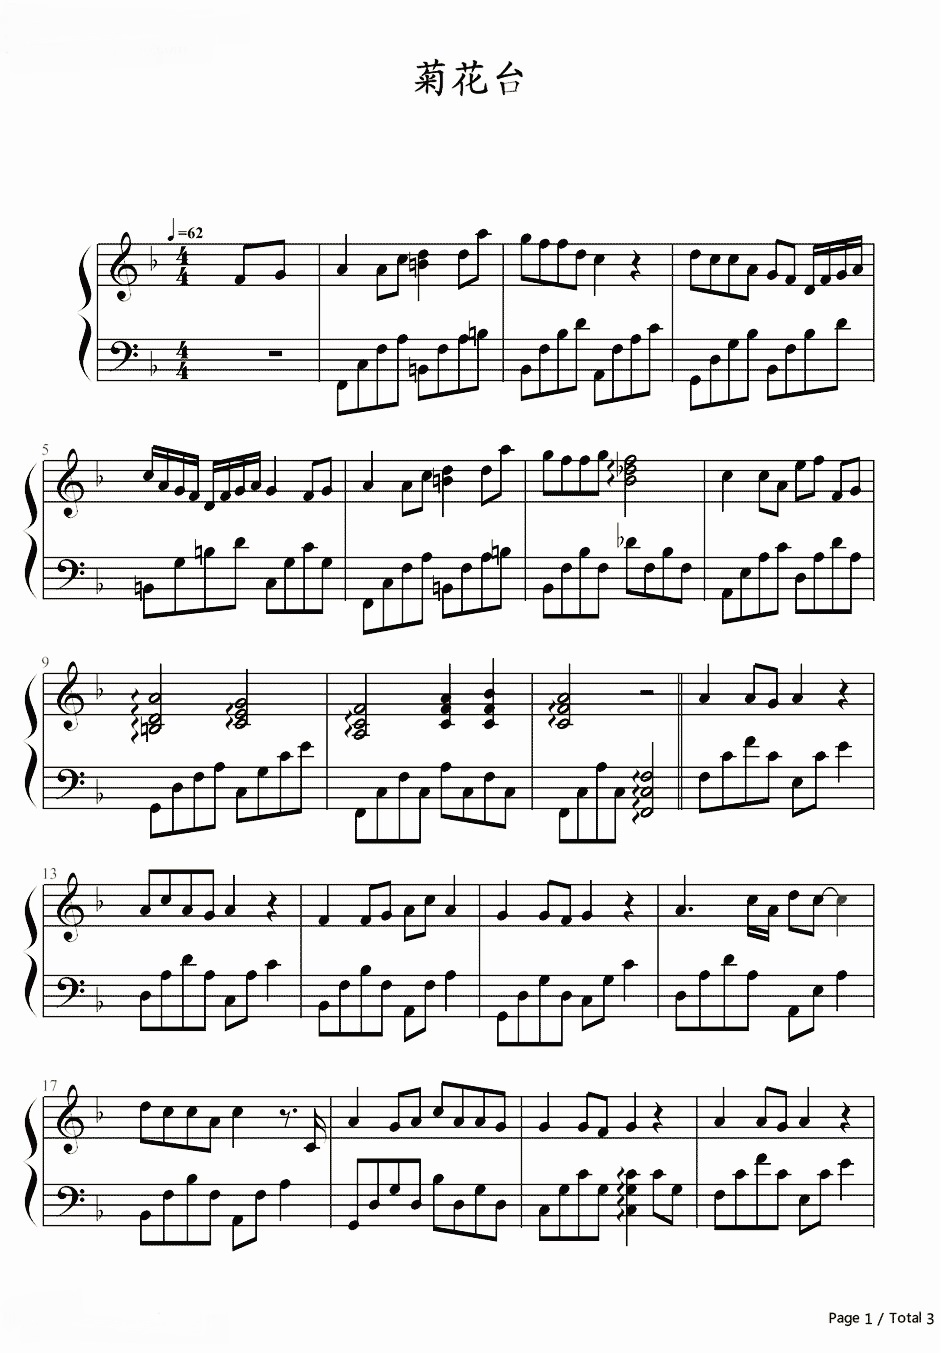 【菊花台】的钢琴谱简谱 – 周杰伦